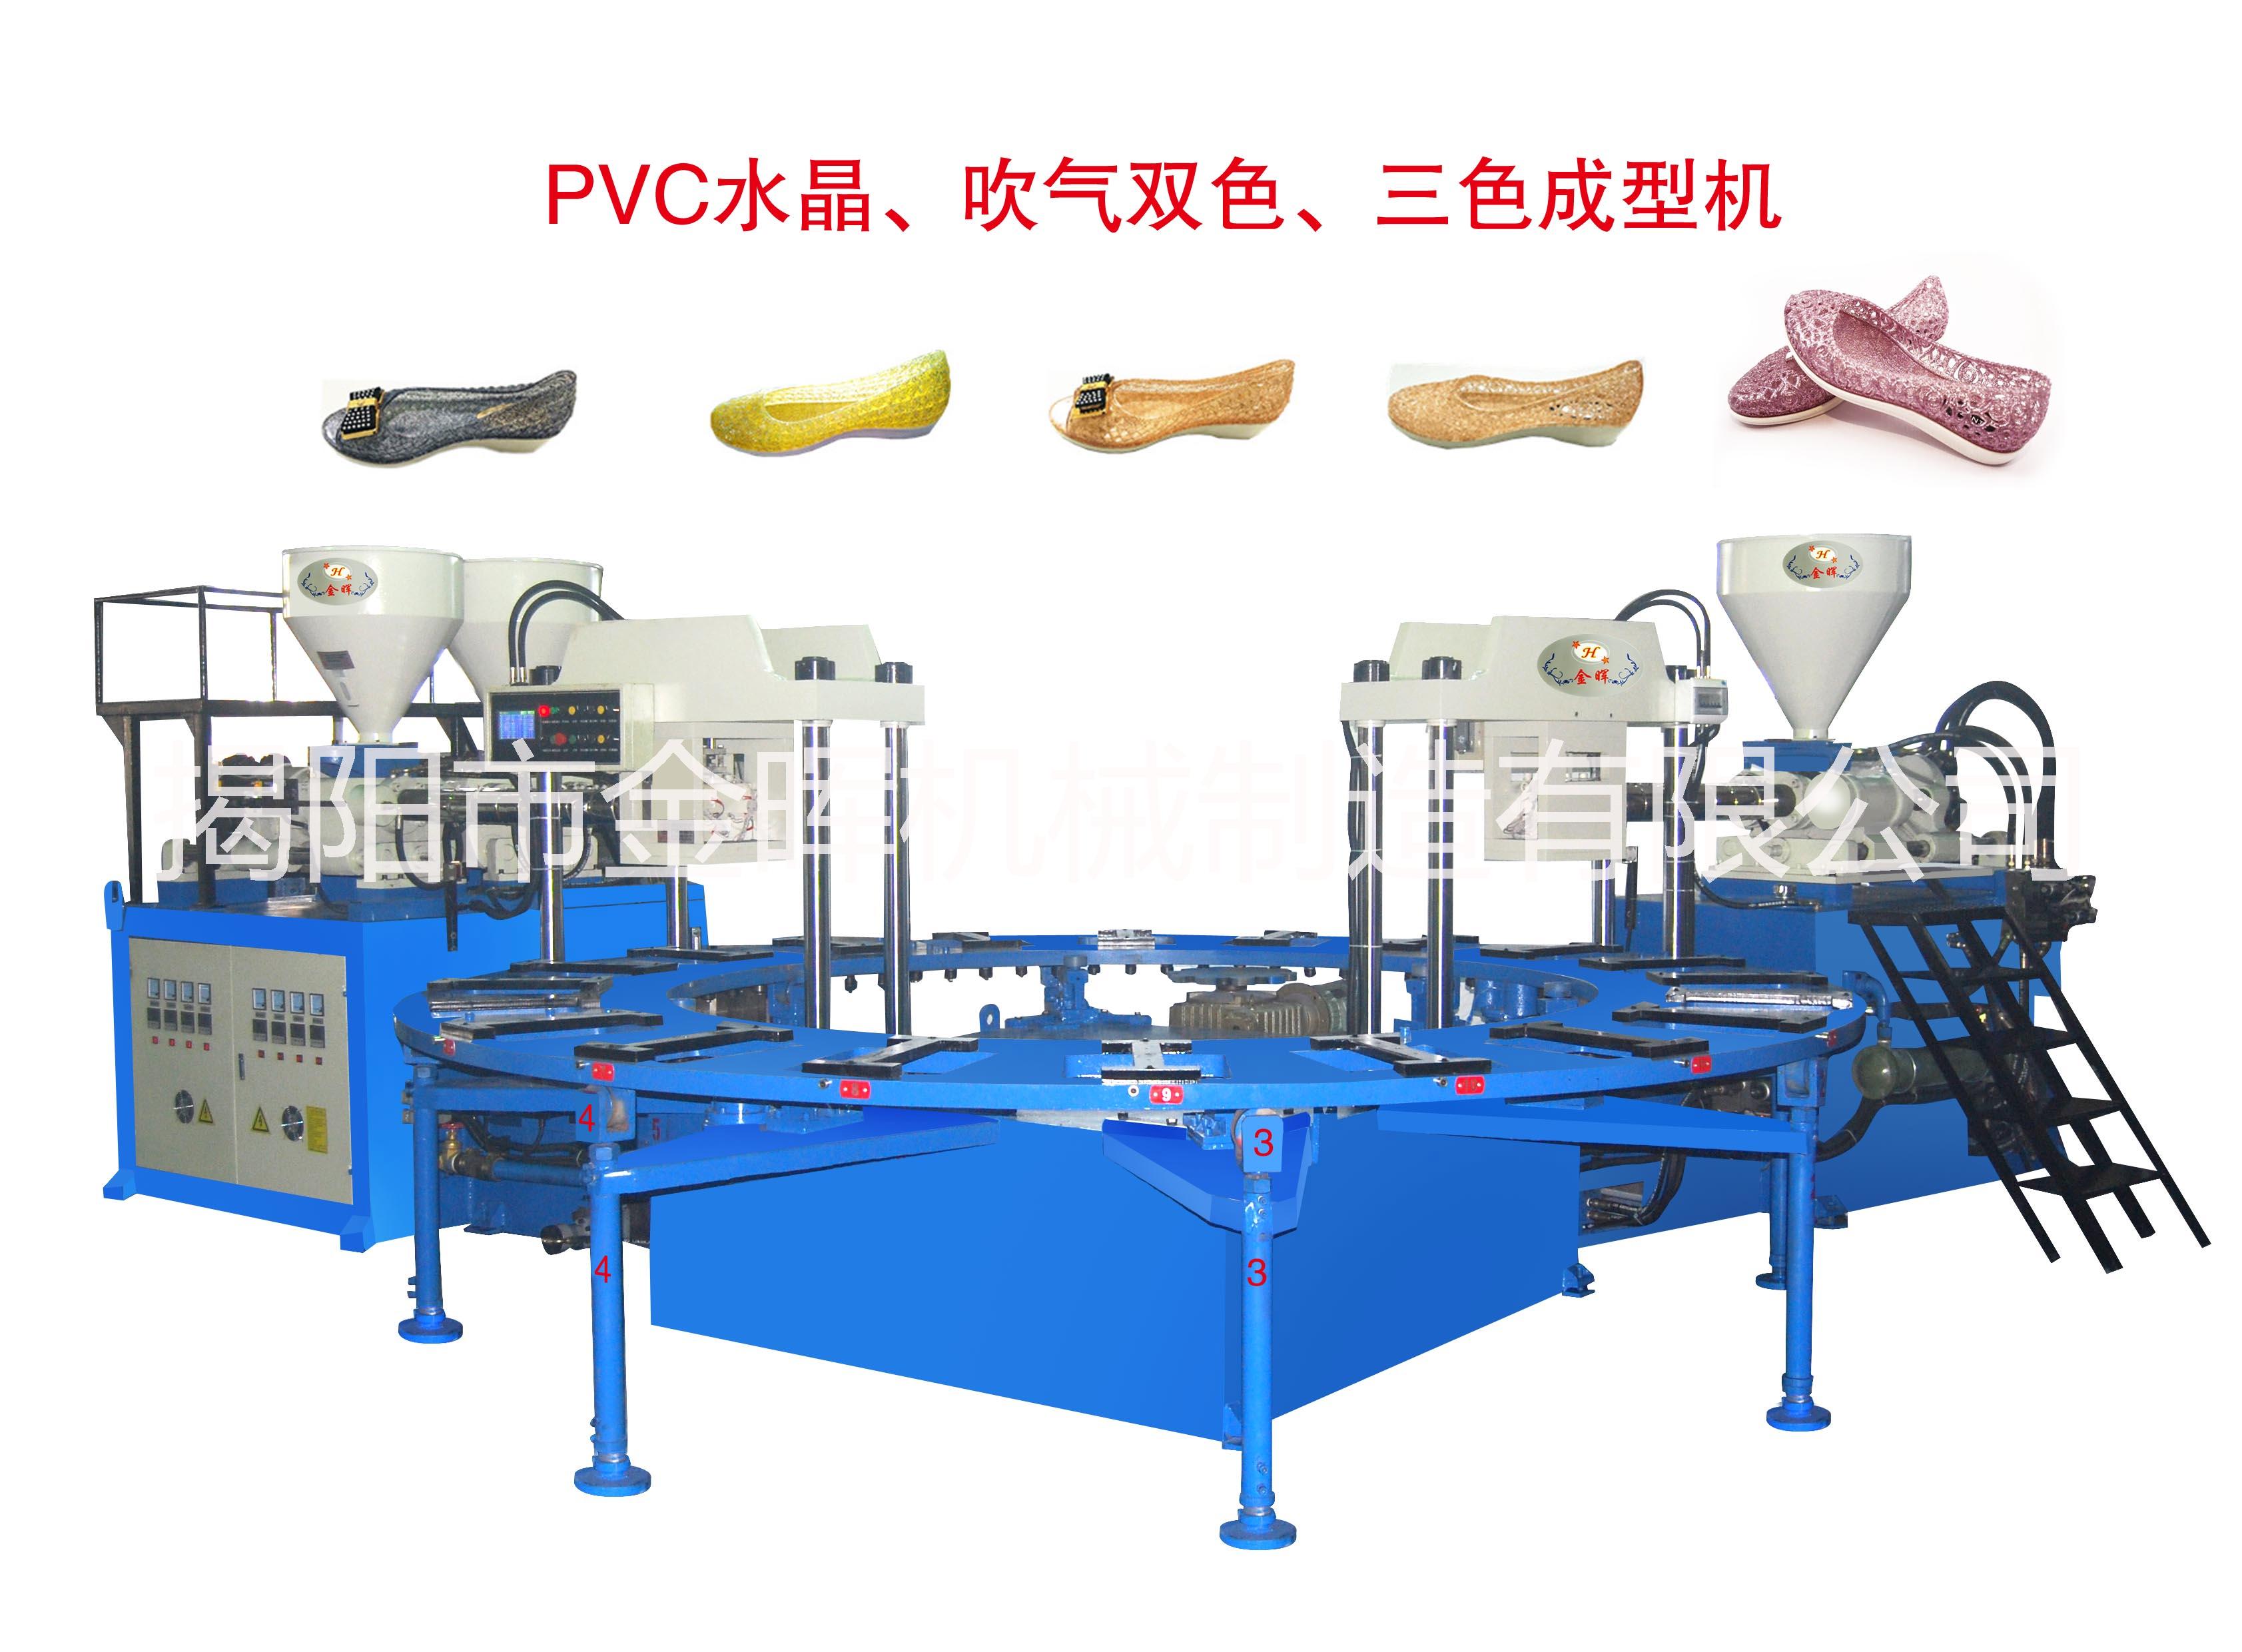 PVC水晶吹气双色、三色成型机 PVC水晶吹气双色、三色成型鞋机